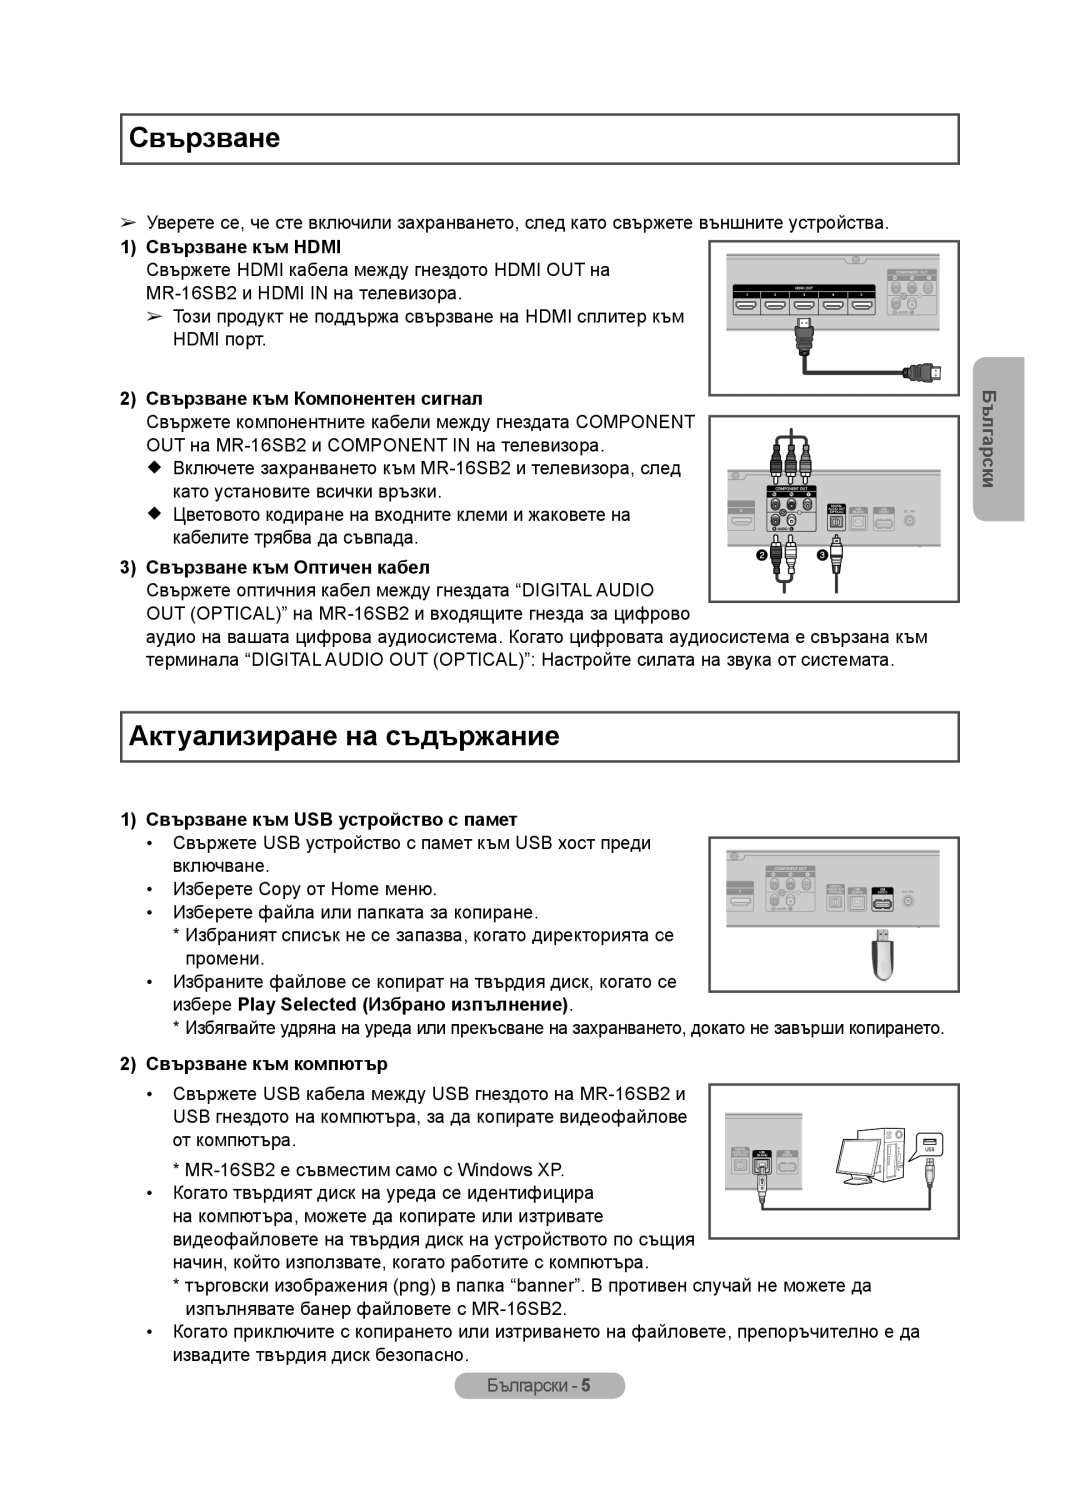 Samsung MR-16SB2 Актуализиране на съдържание, 1 Свързване към HDMI, 2 Свързване към Компонентен сигнал, Български 